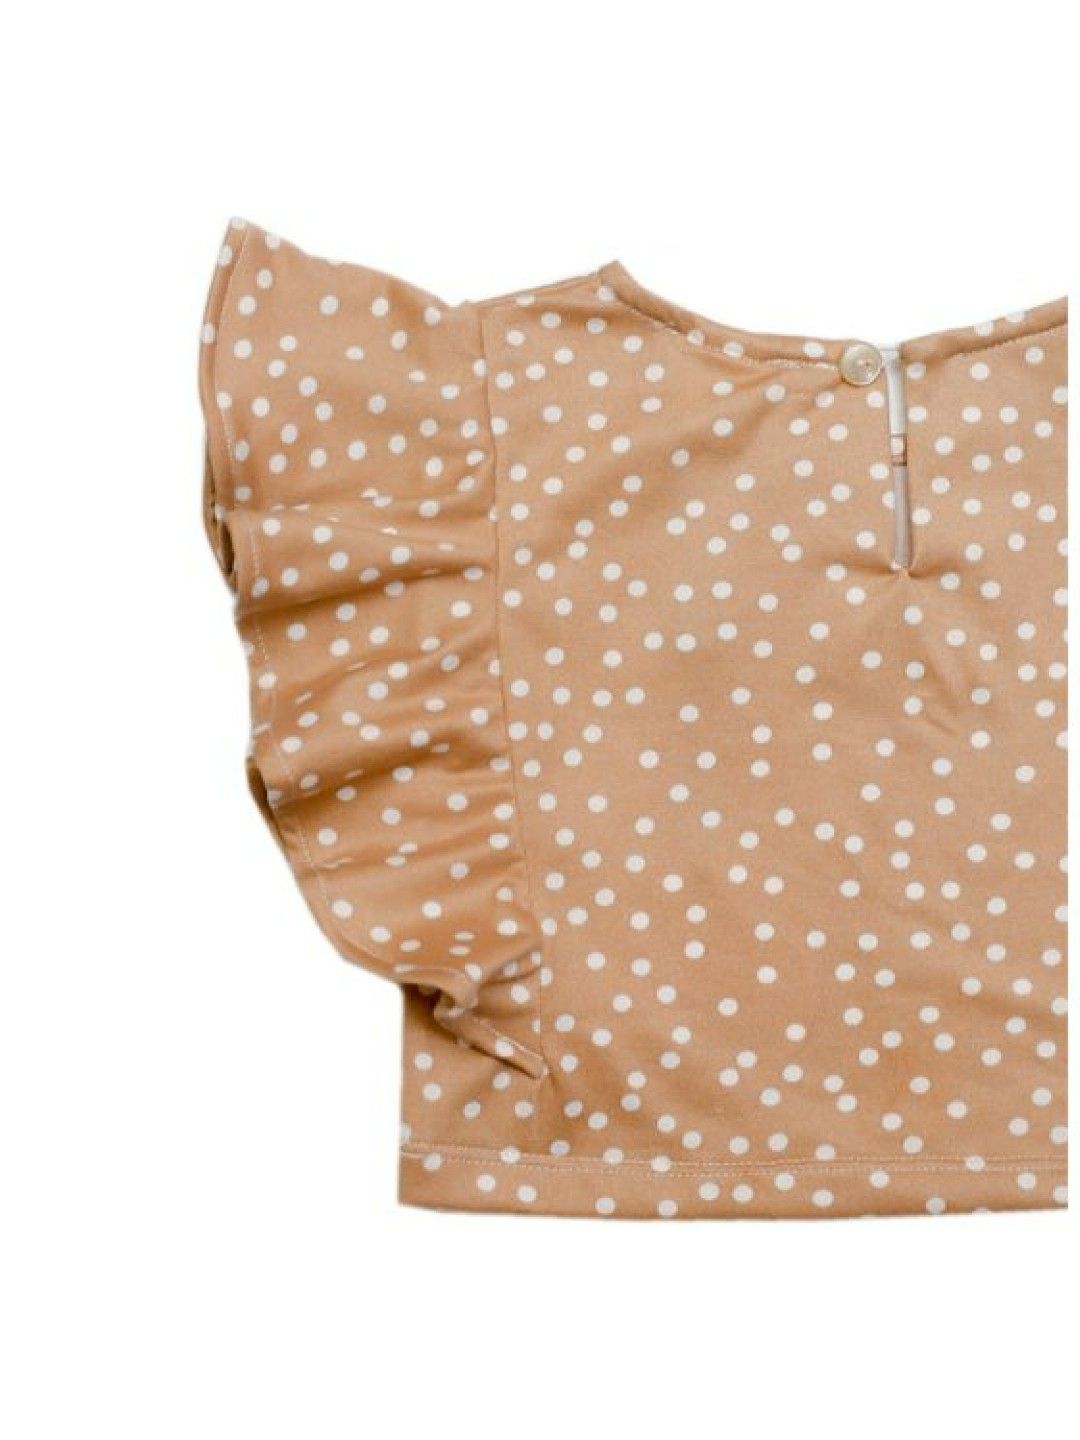 bean fashion Daywear Delight Flutter Sleeve Top (Beige- Image 4)